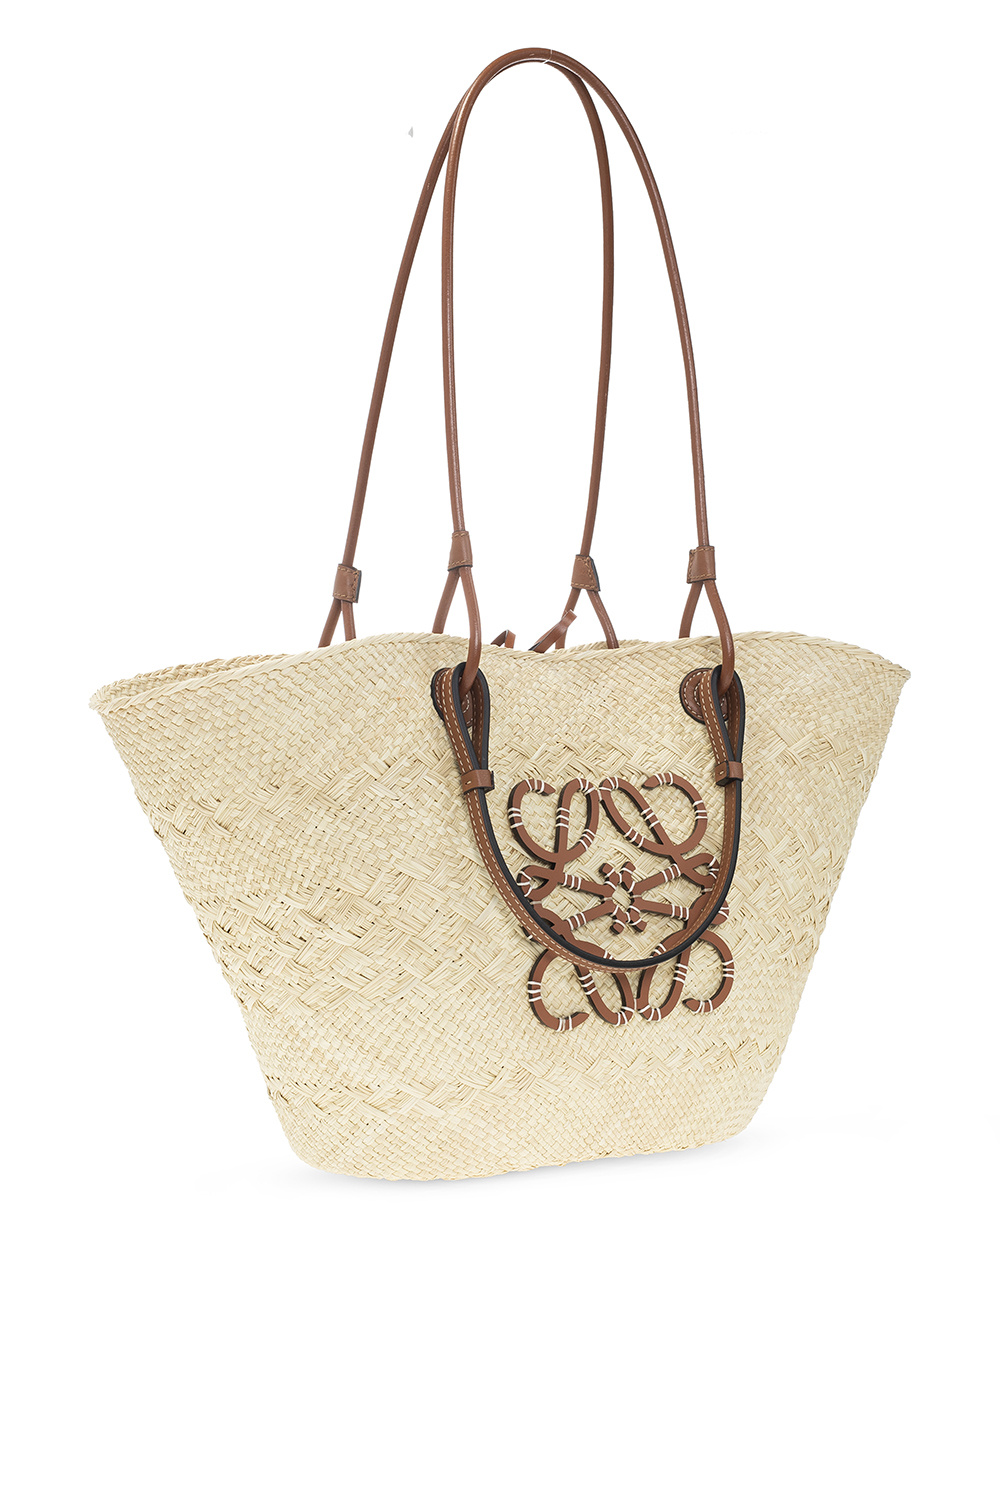 IetpShops TW - LOEWE Fringes bucket bag - Brown 'Anagram Small' shopper bag  Loewe